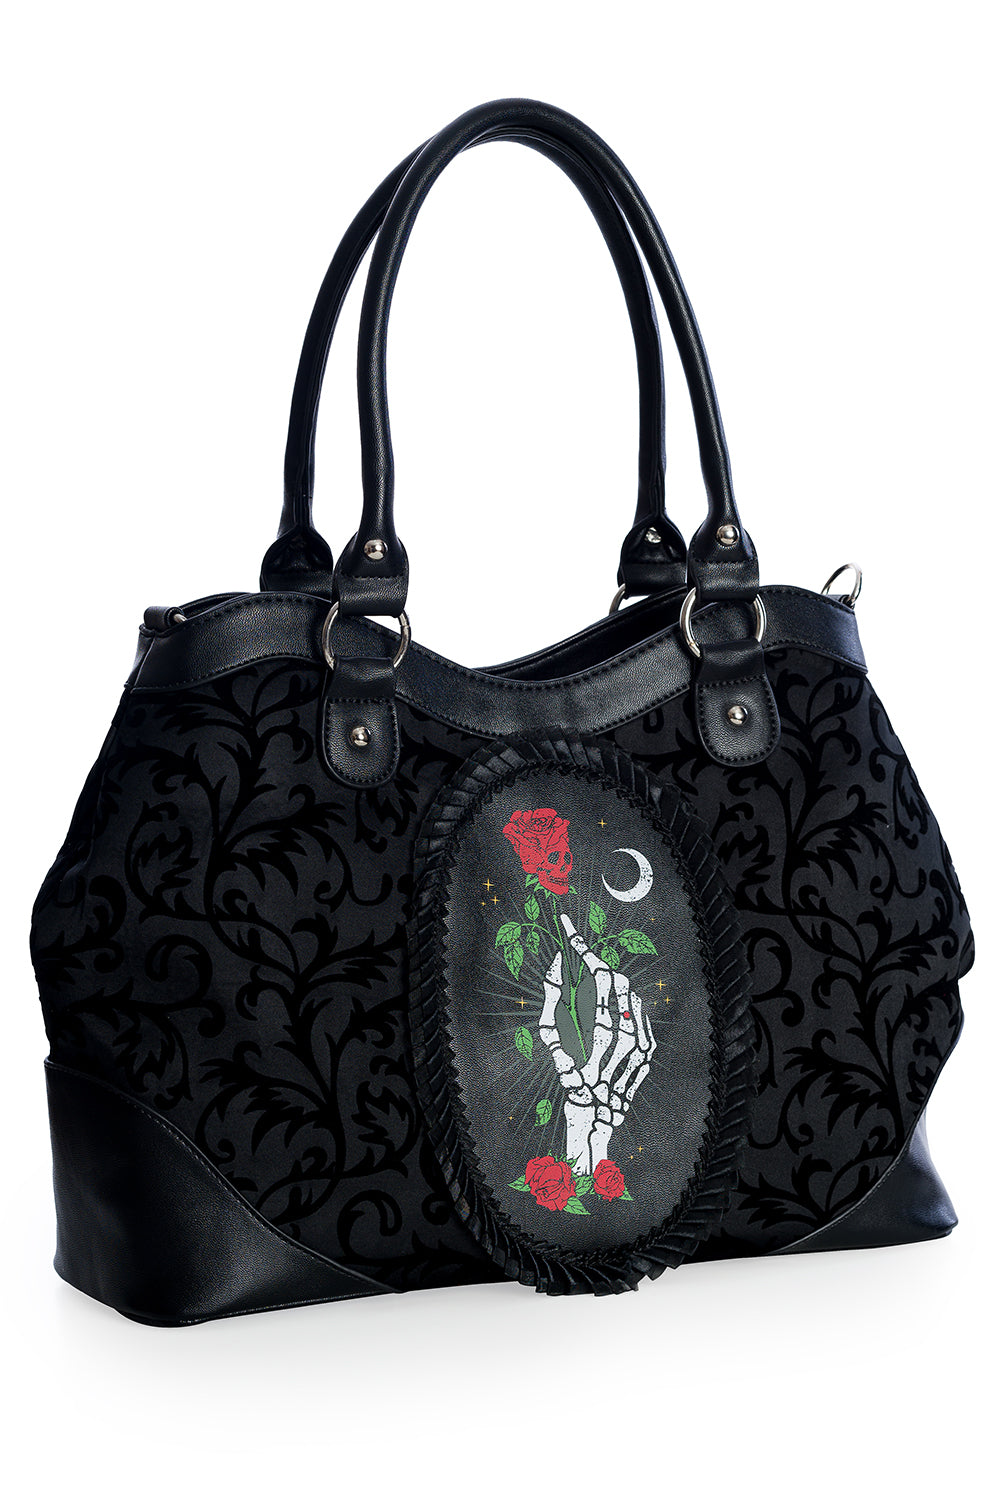 Banned Alternative Ishtar Black Slouch Bag